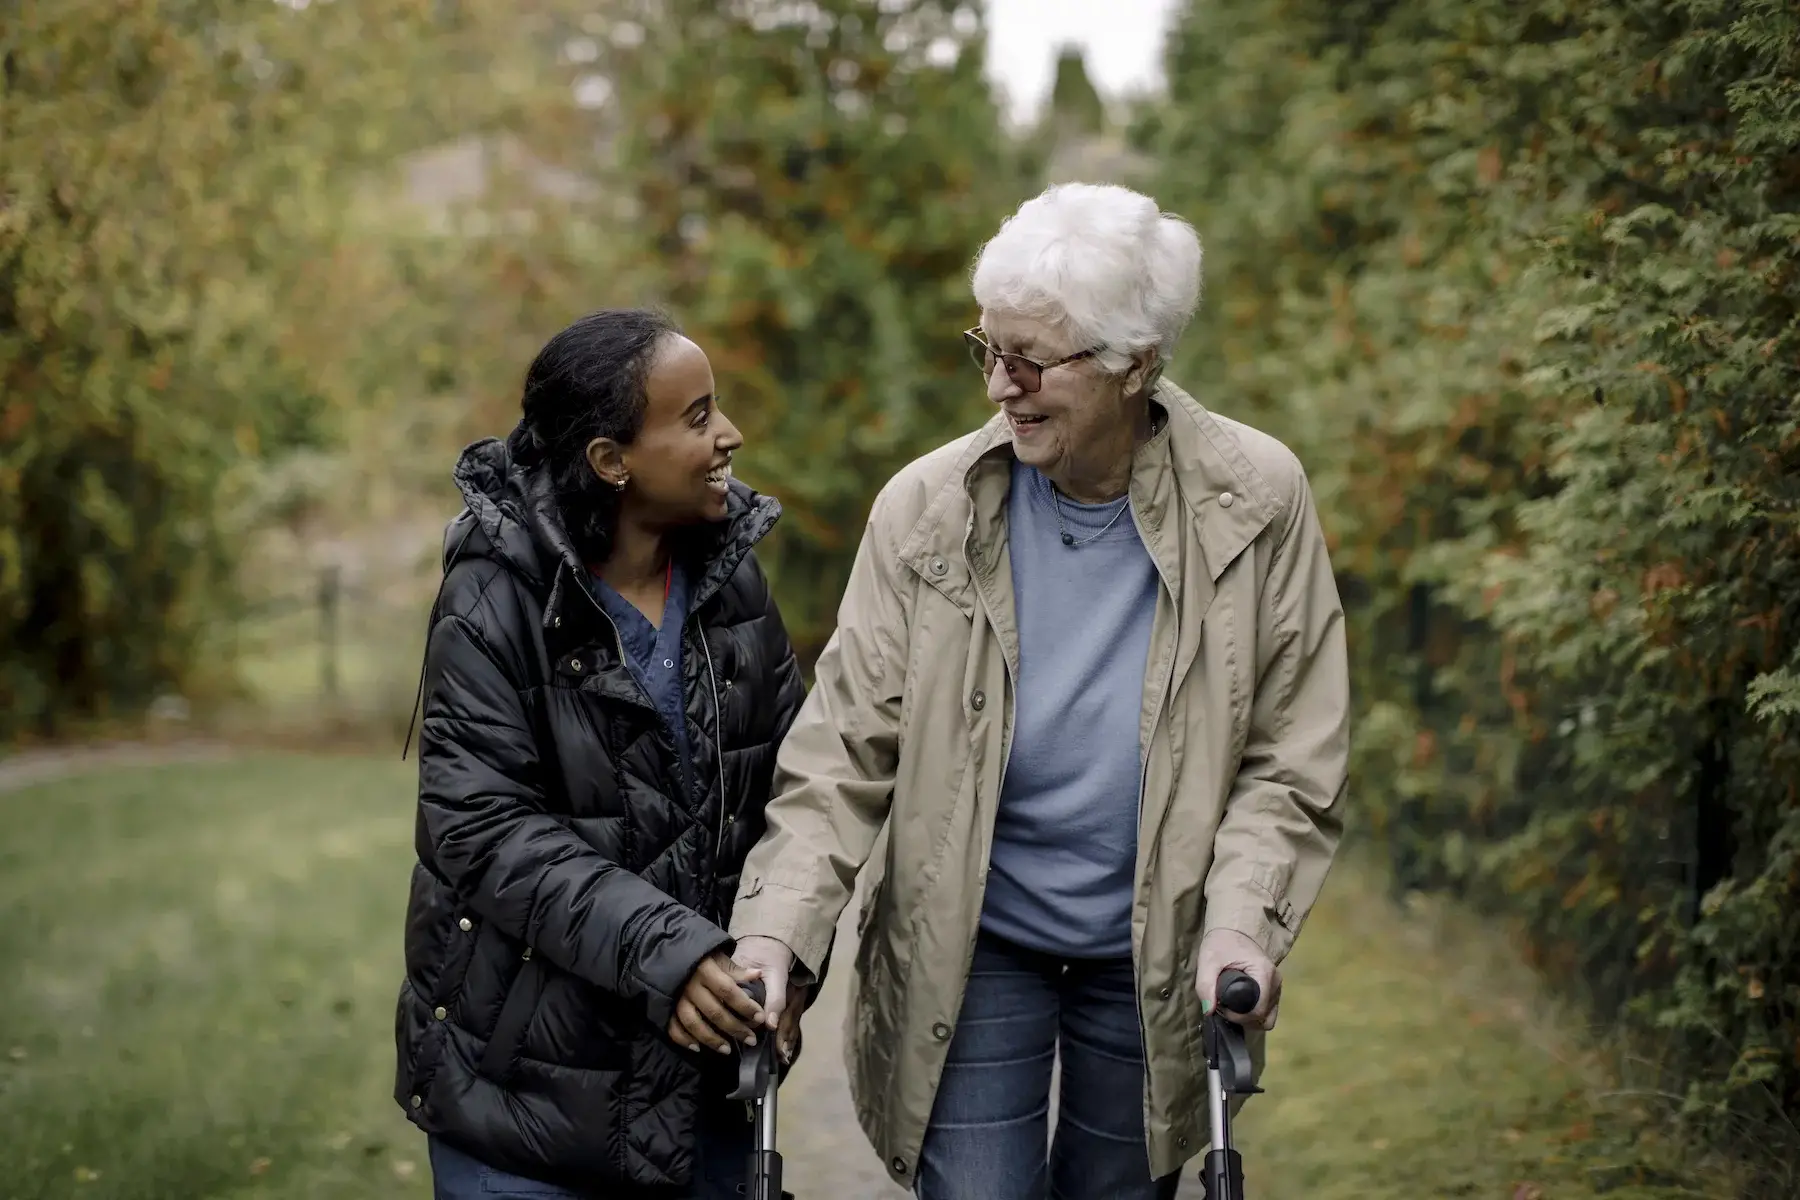 A young nurse helps an older woman walk outside through a garden as both smile